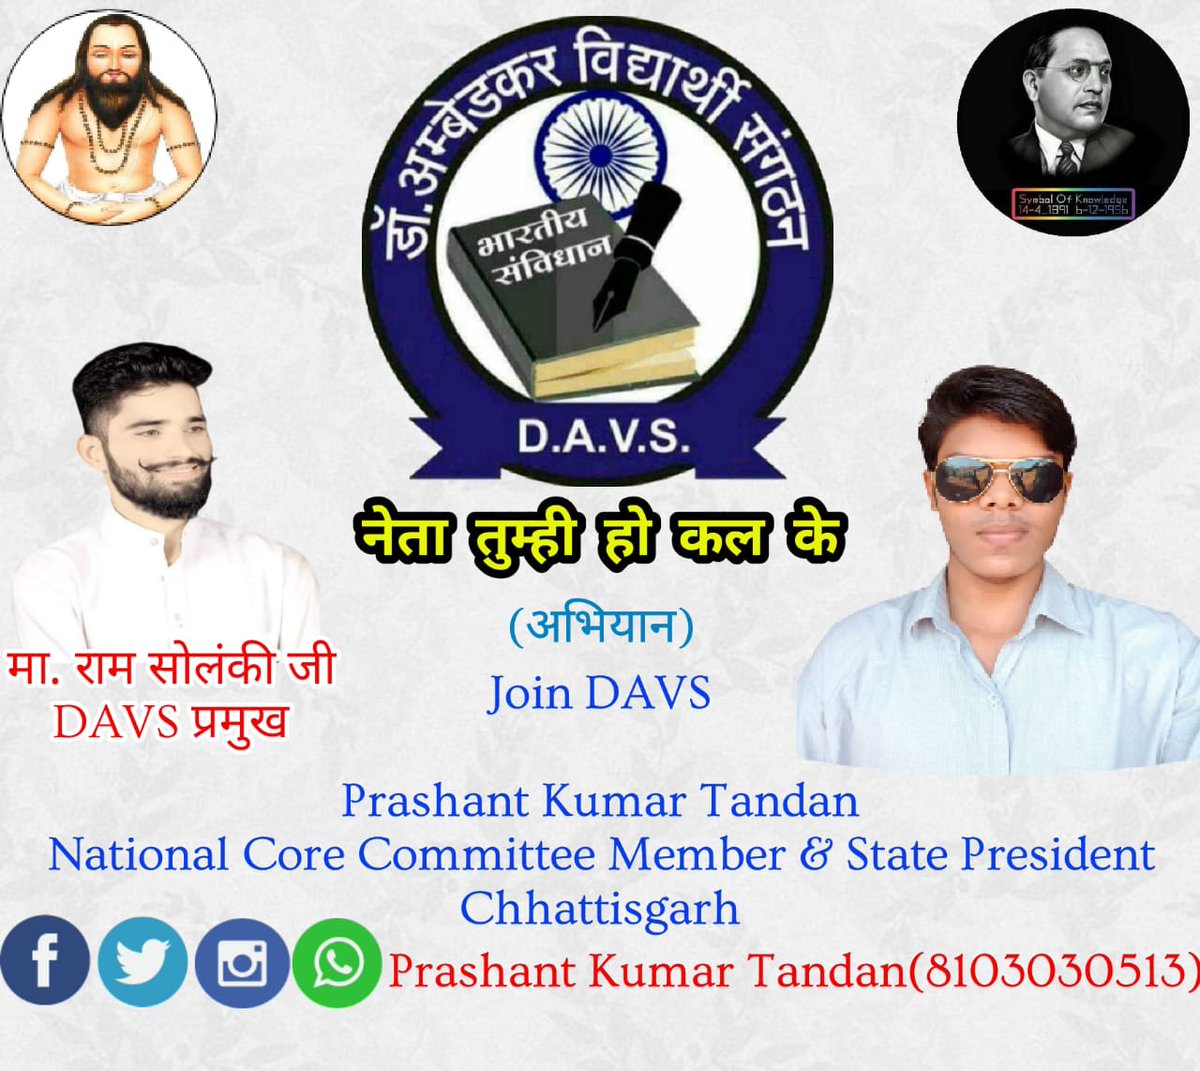 @DAVSChiefCG
8103030513
#Join_DAVS
#Join_DAVS
#Join_DAVS
#Join_DAVS
#Join_DAVS
#Join_DAVS
#Join_DAVS
#Join_DAVS
#Join_DAVS
#Join_DAVS
#Join_DAVS
#Join_DAVS
#Join_DAVS
#Join_DAVS
#Join_DAVS
#Join_DAVS
#Join_DAVS
#Join_DAVS
#Join_DAVS
#Join_DAVS
#Join_DAVS
#Join_DAVS

#Join_DAVS